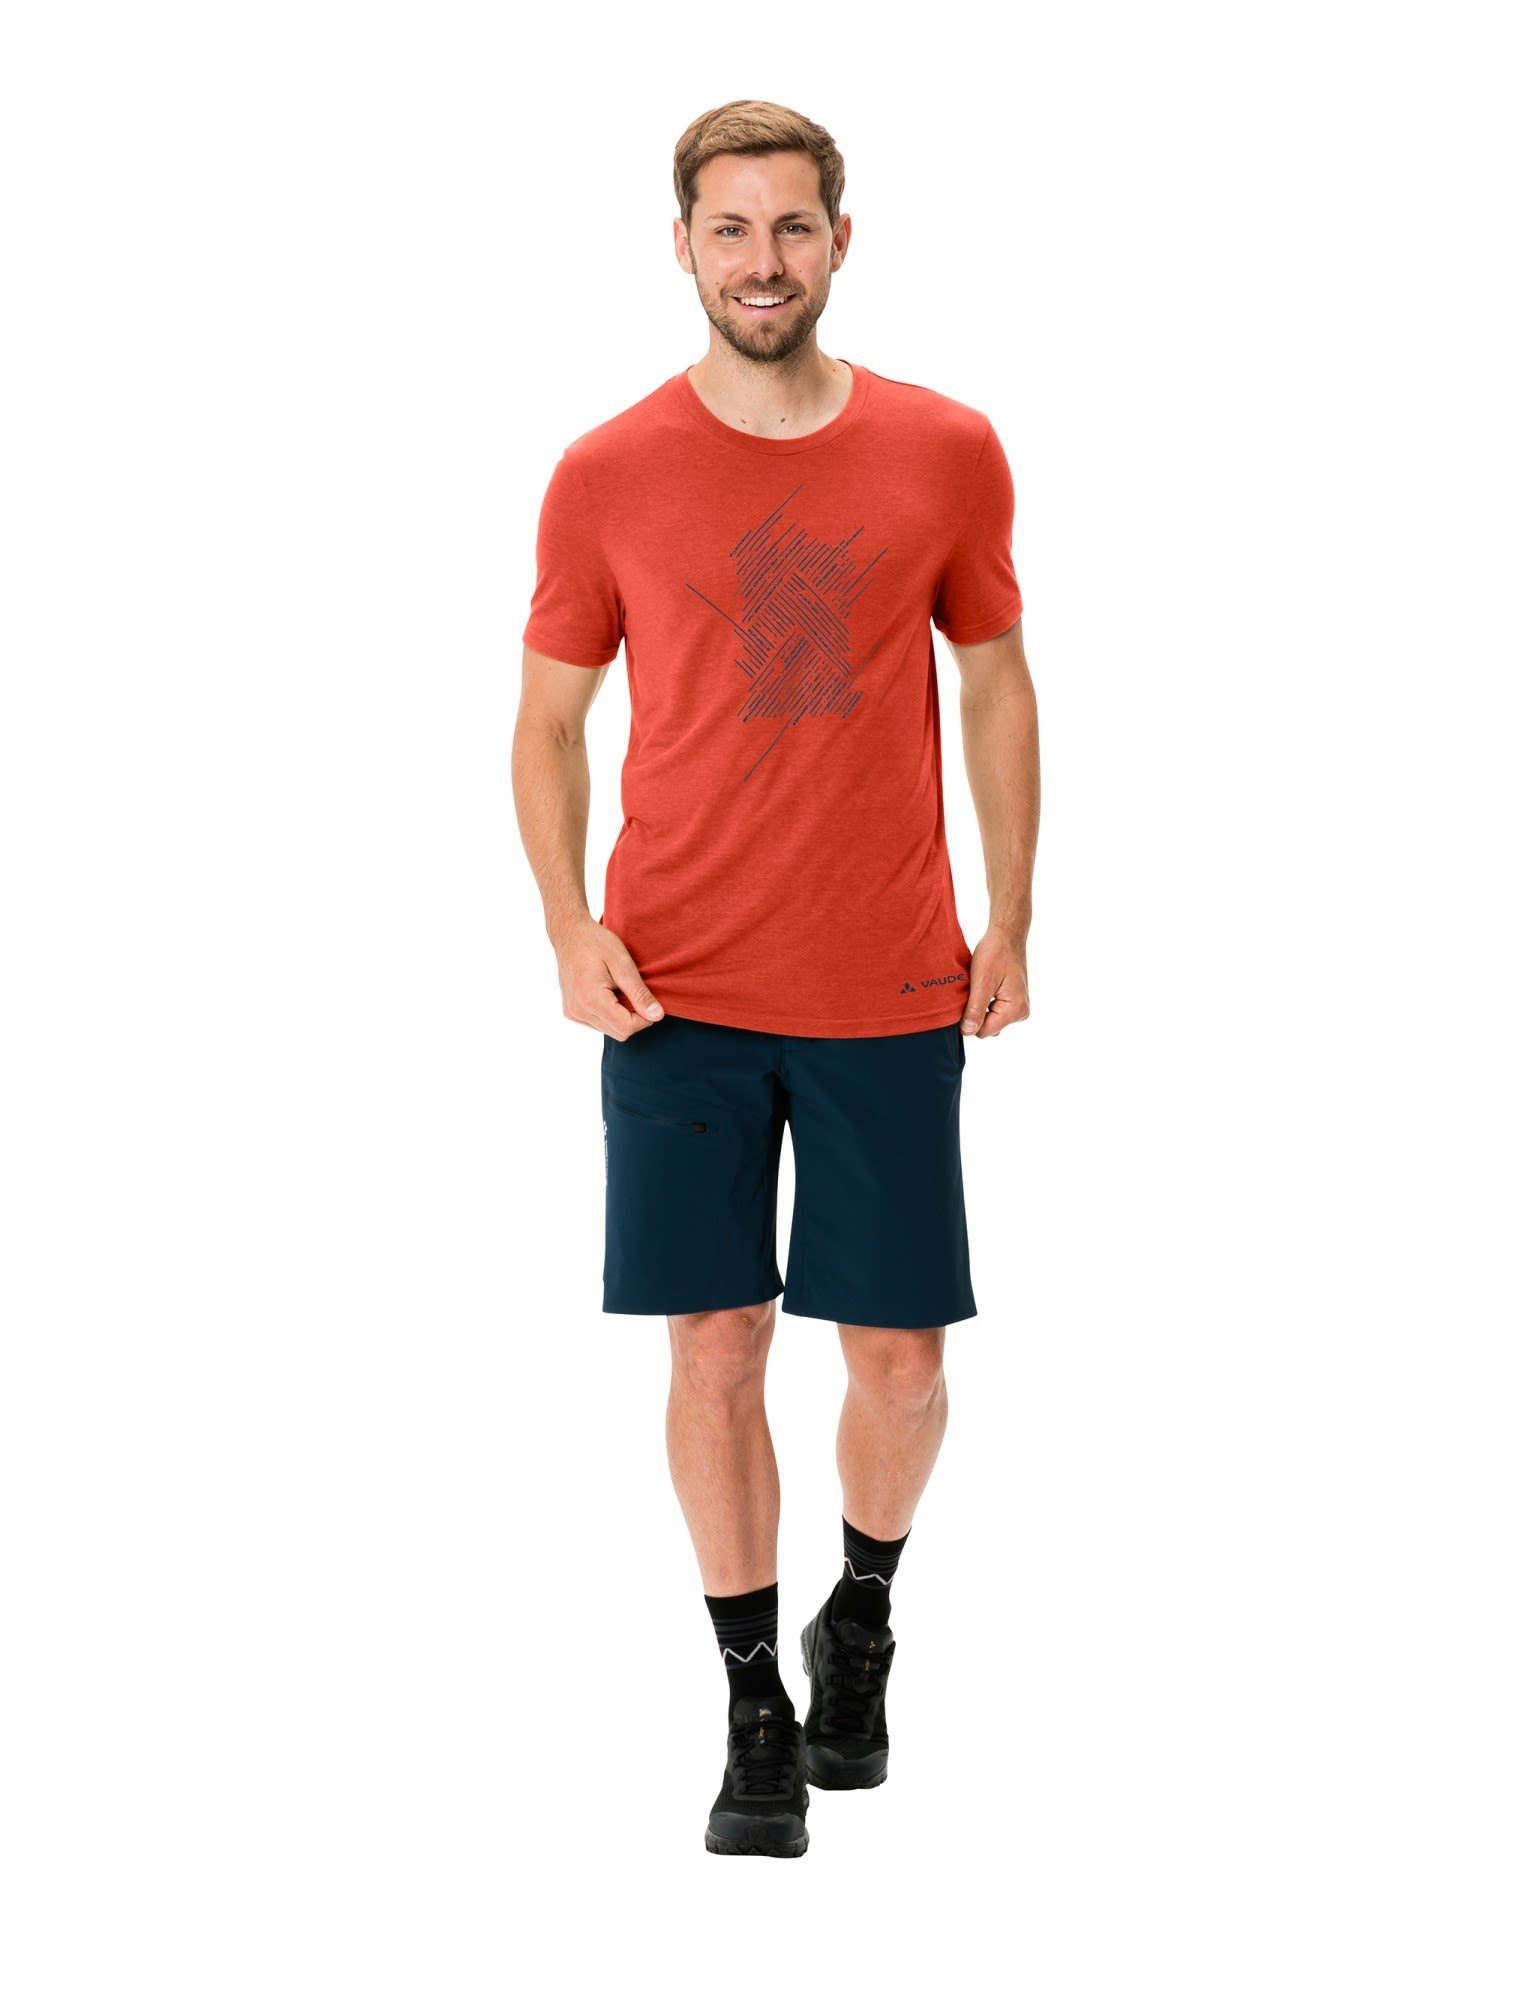 Glowing Iii T-shirt Red T-Shirt Mens Herren Tekoa Kurzarm-Shirt VAUDE Vaude